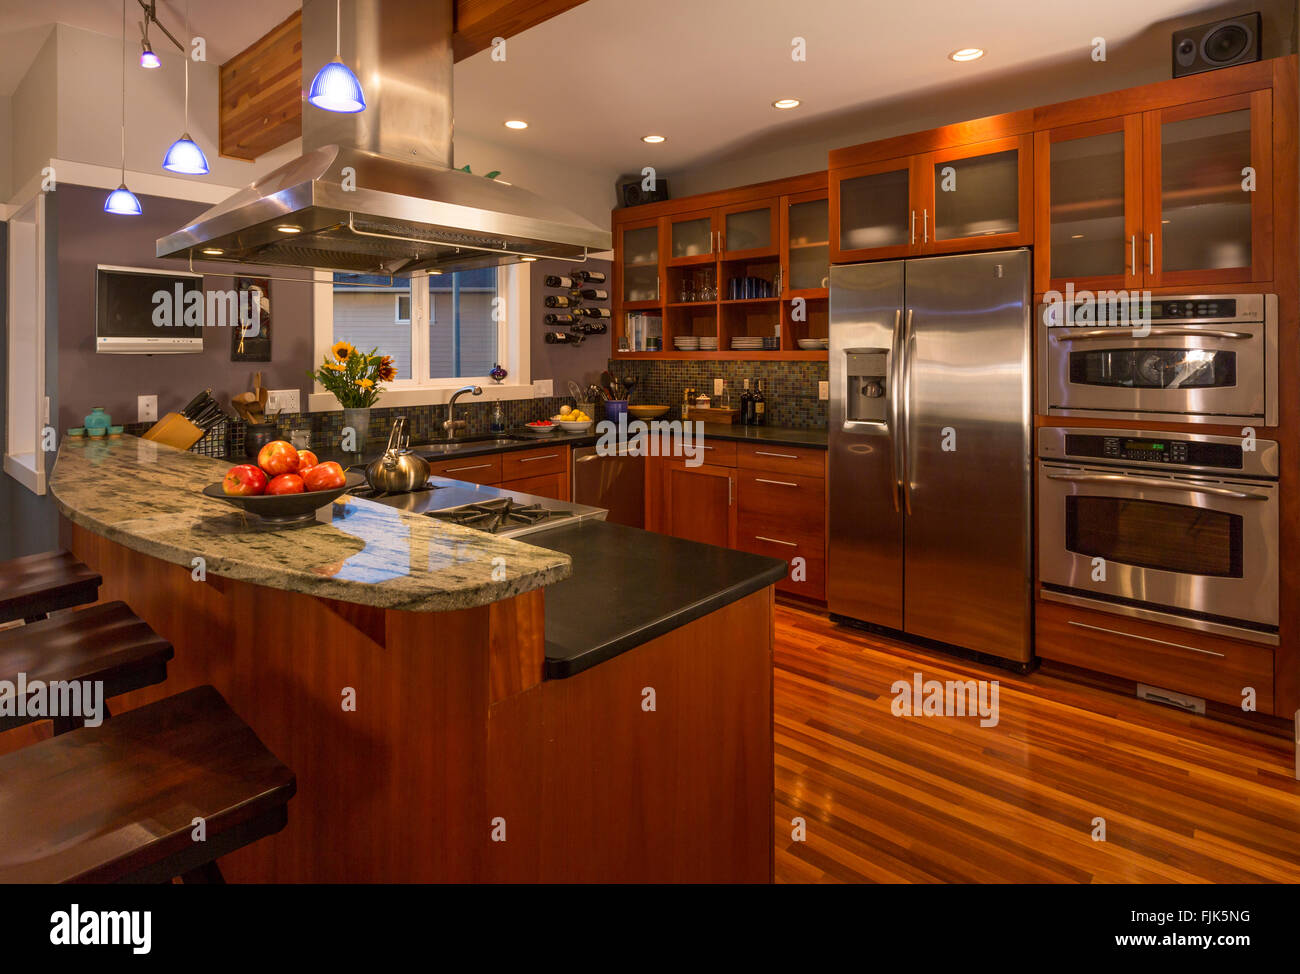 Contemporaneo ed elegante cucina domestica interno con armadi in legno e pavimenti e superfici in granito, elettrodomestici di acciaio inossidabile e illuminazione d'accento Foto Stock